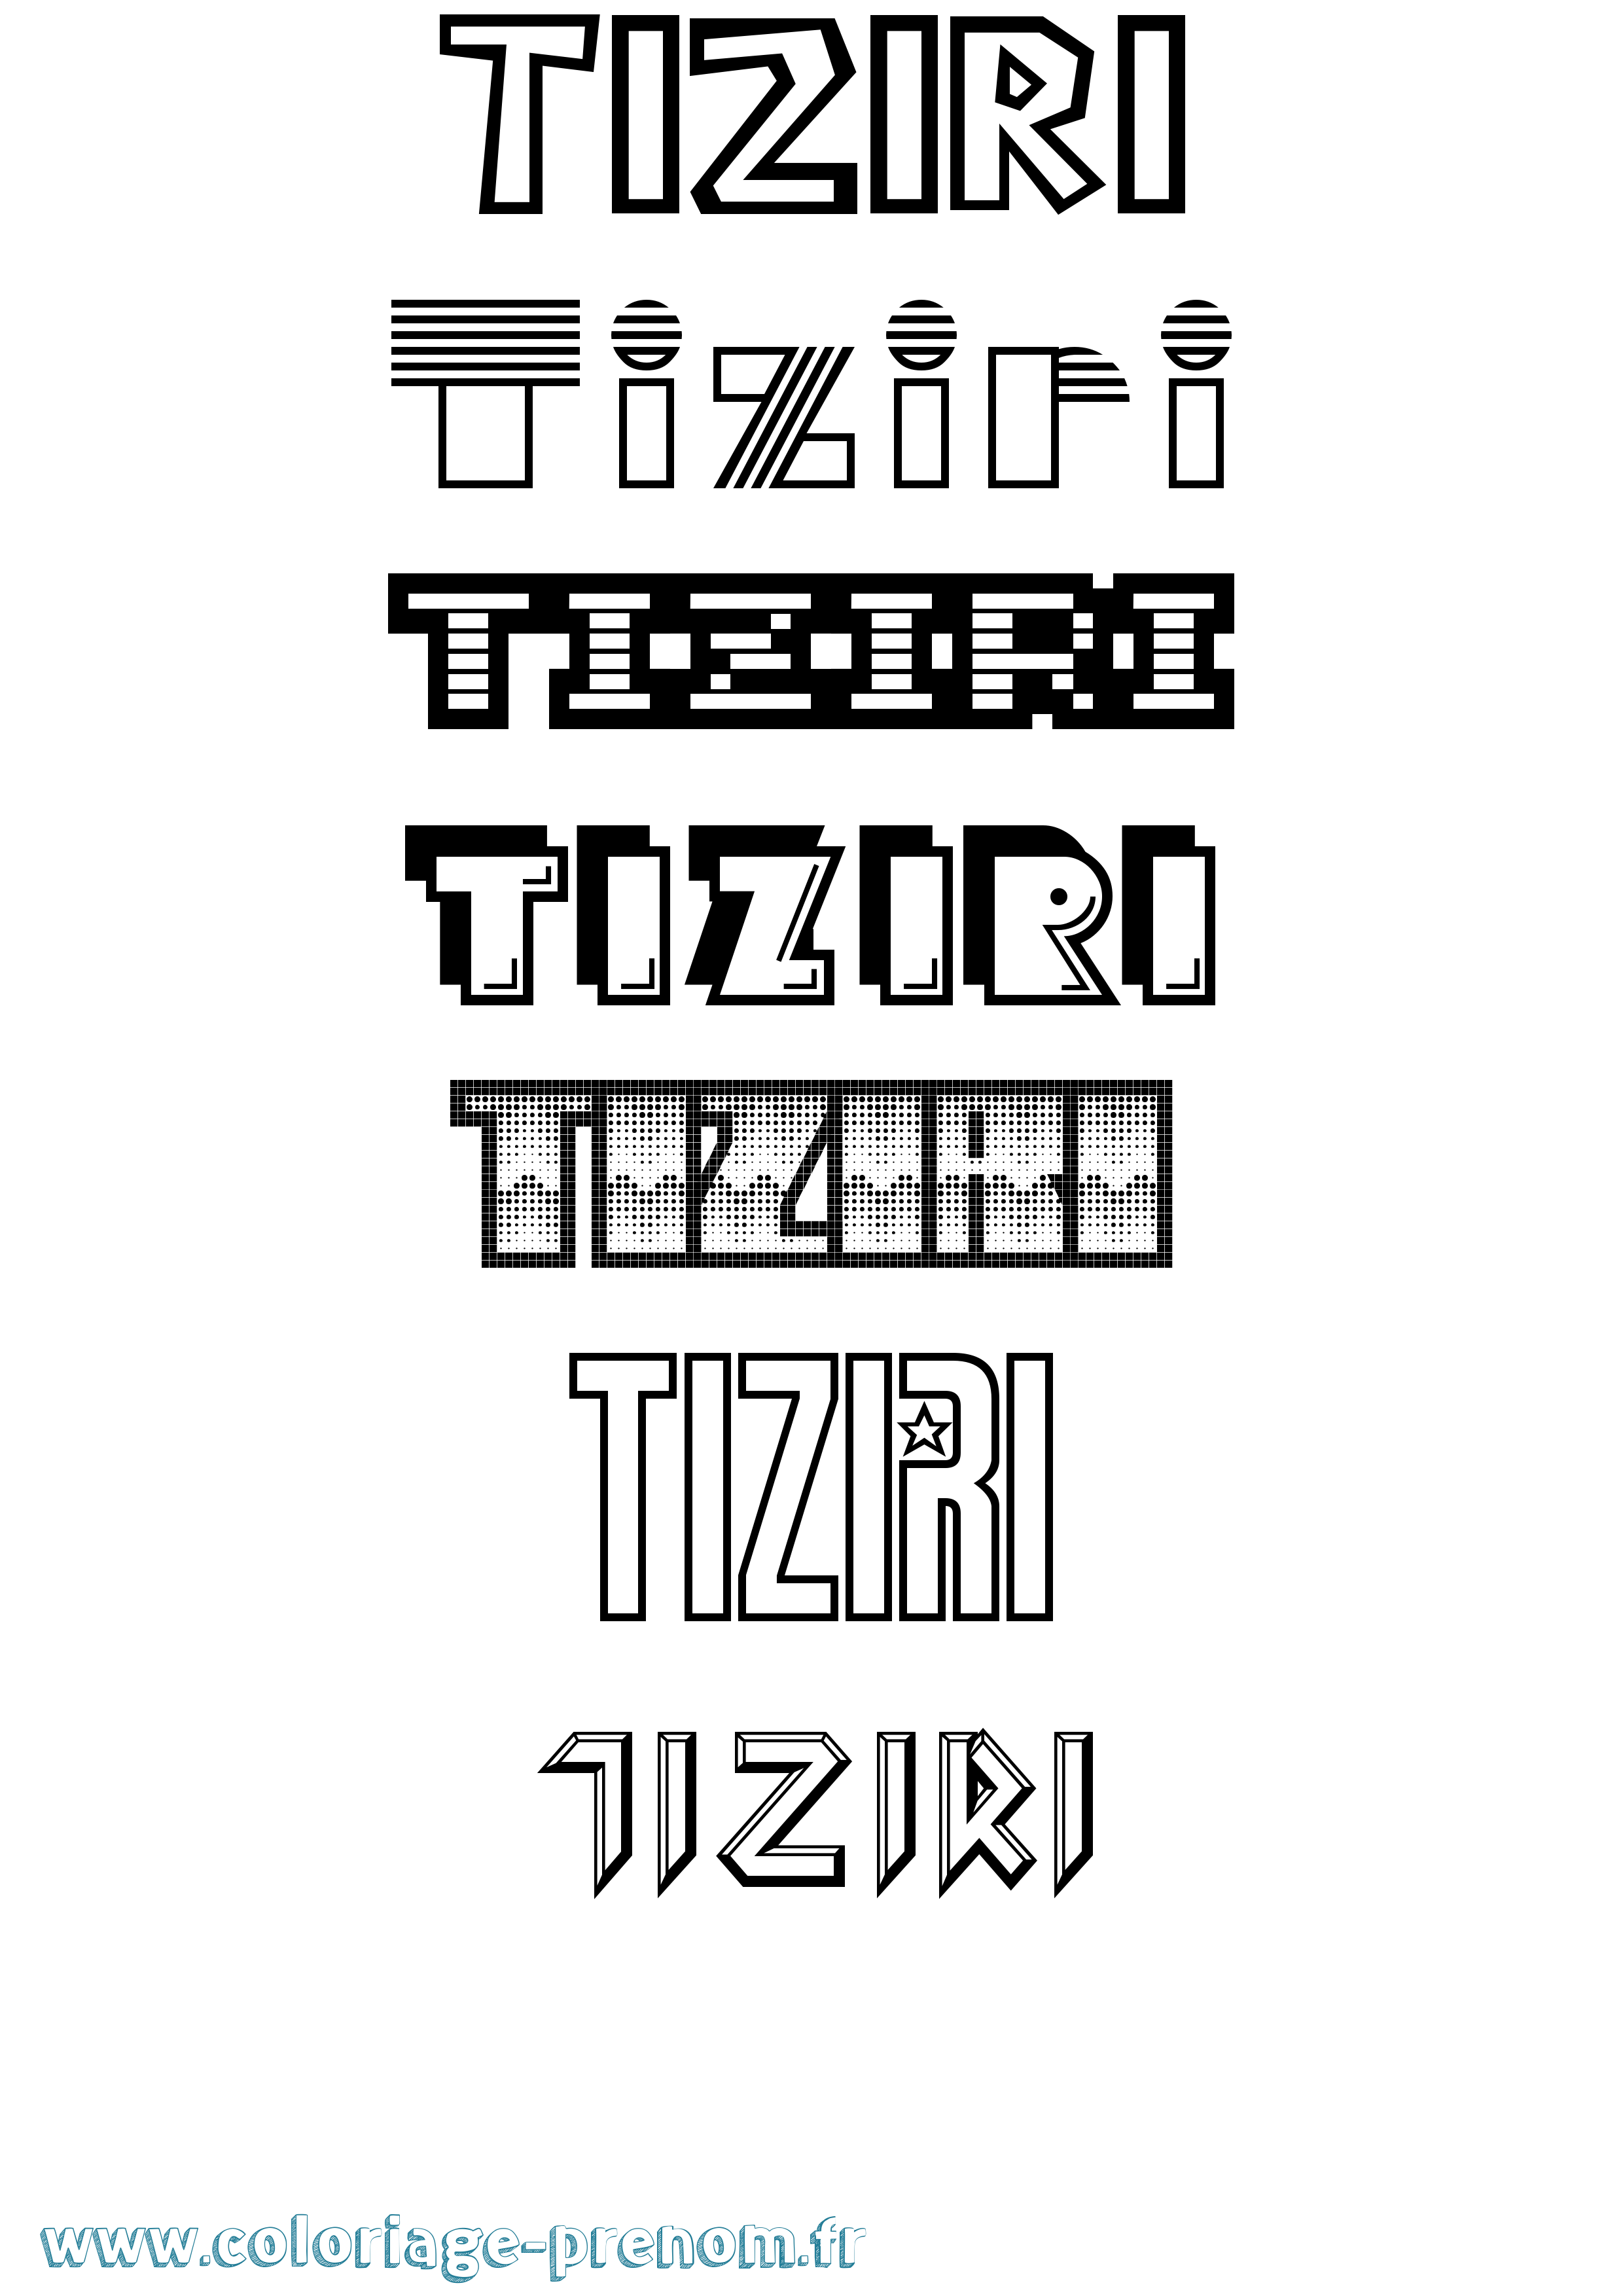 Coloriage prénom Tiziri Jeux Vidéos